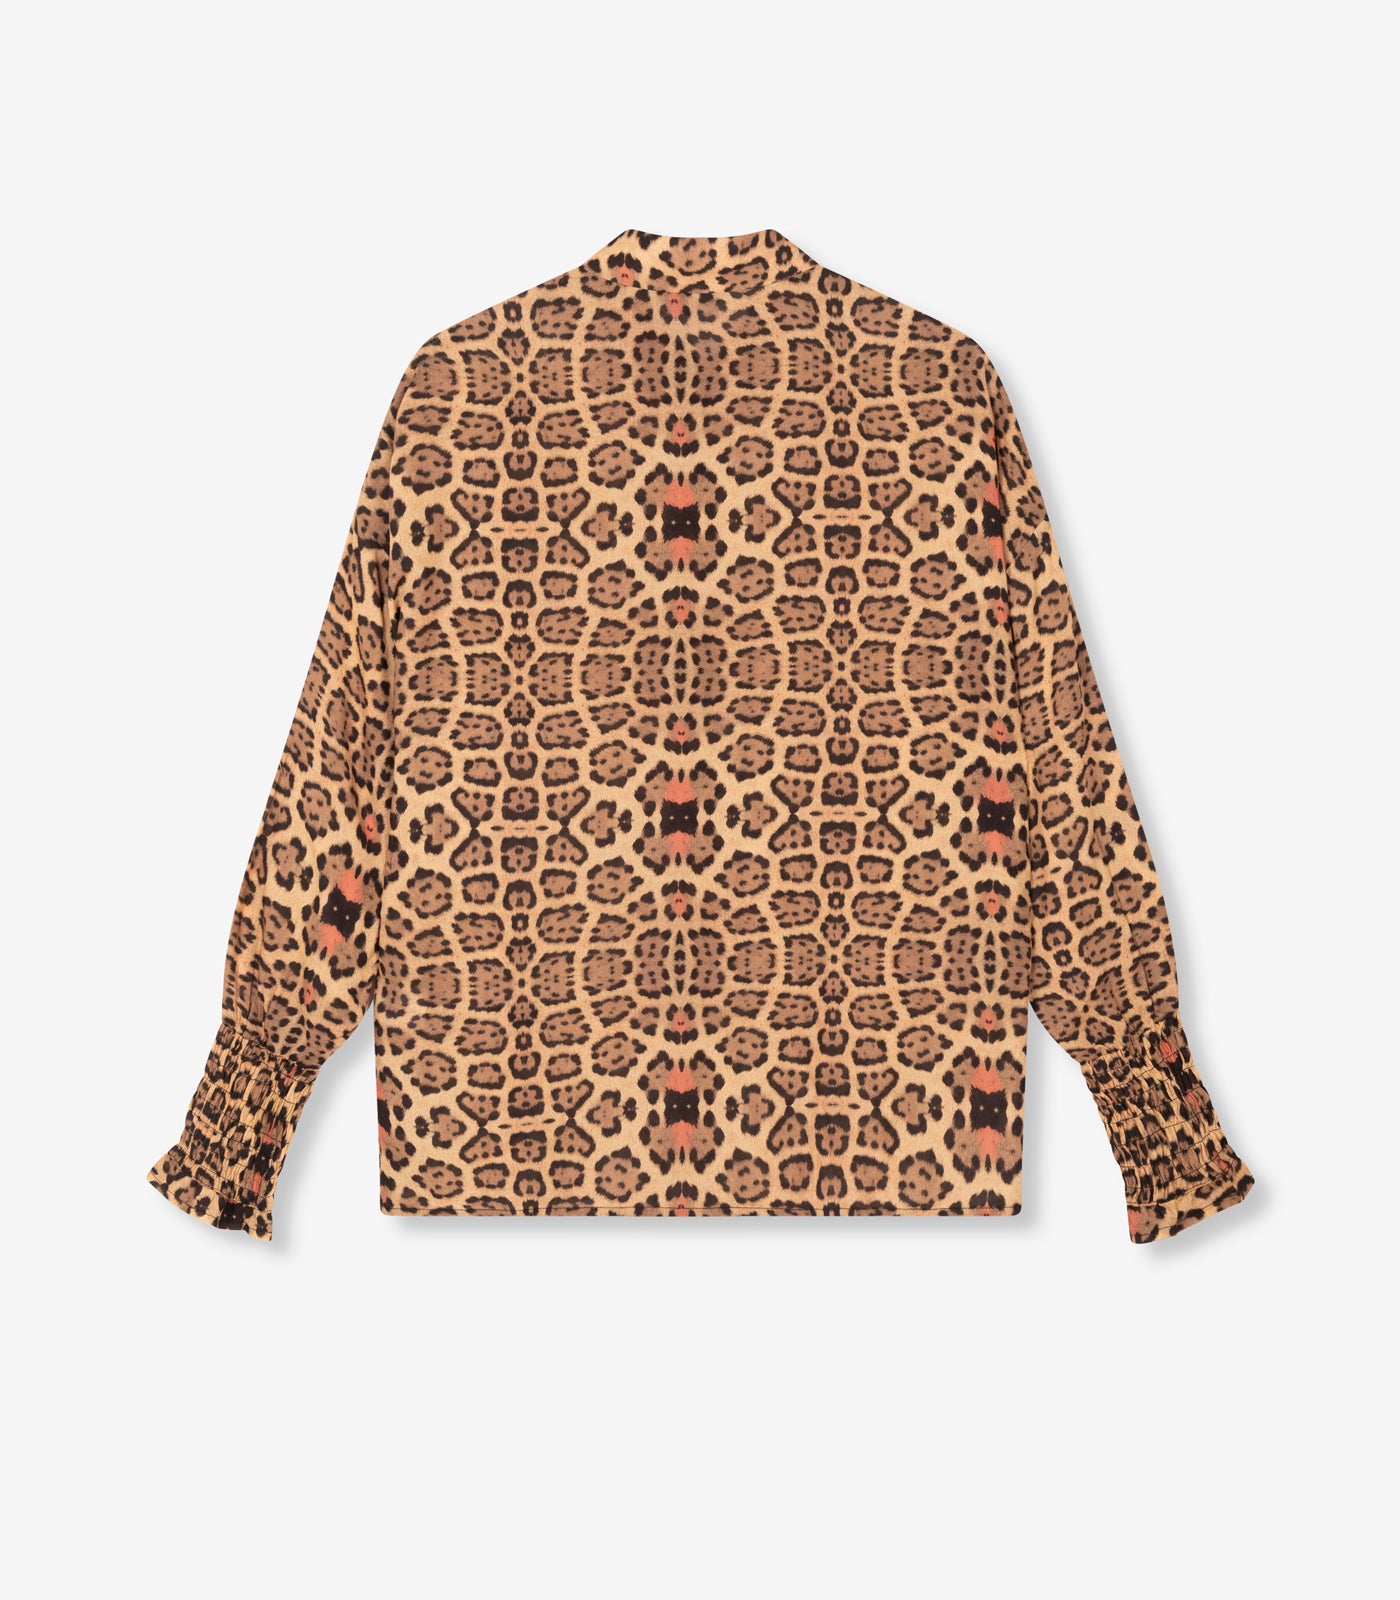 Viscose blouse - leopard